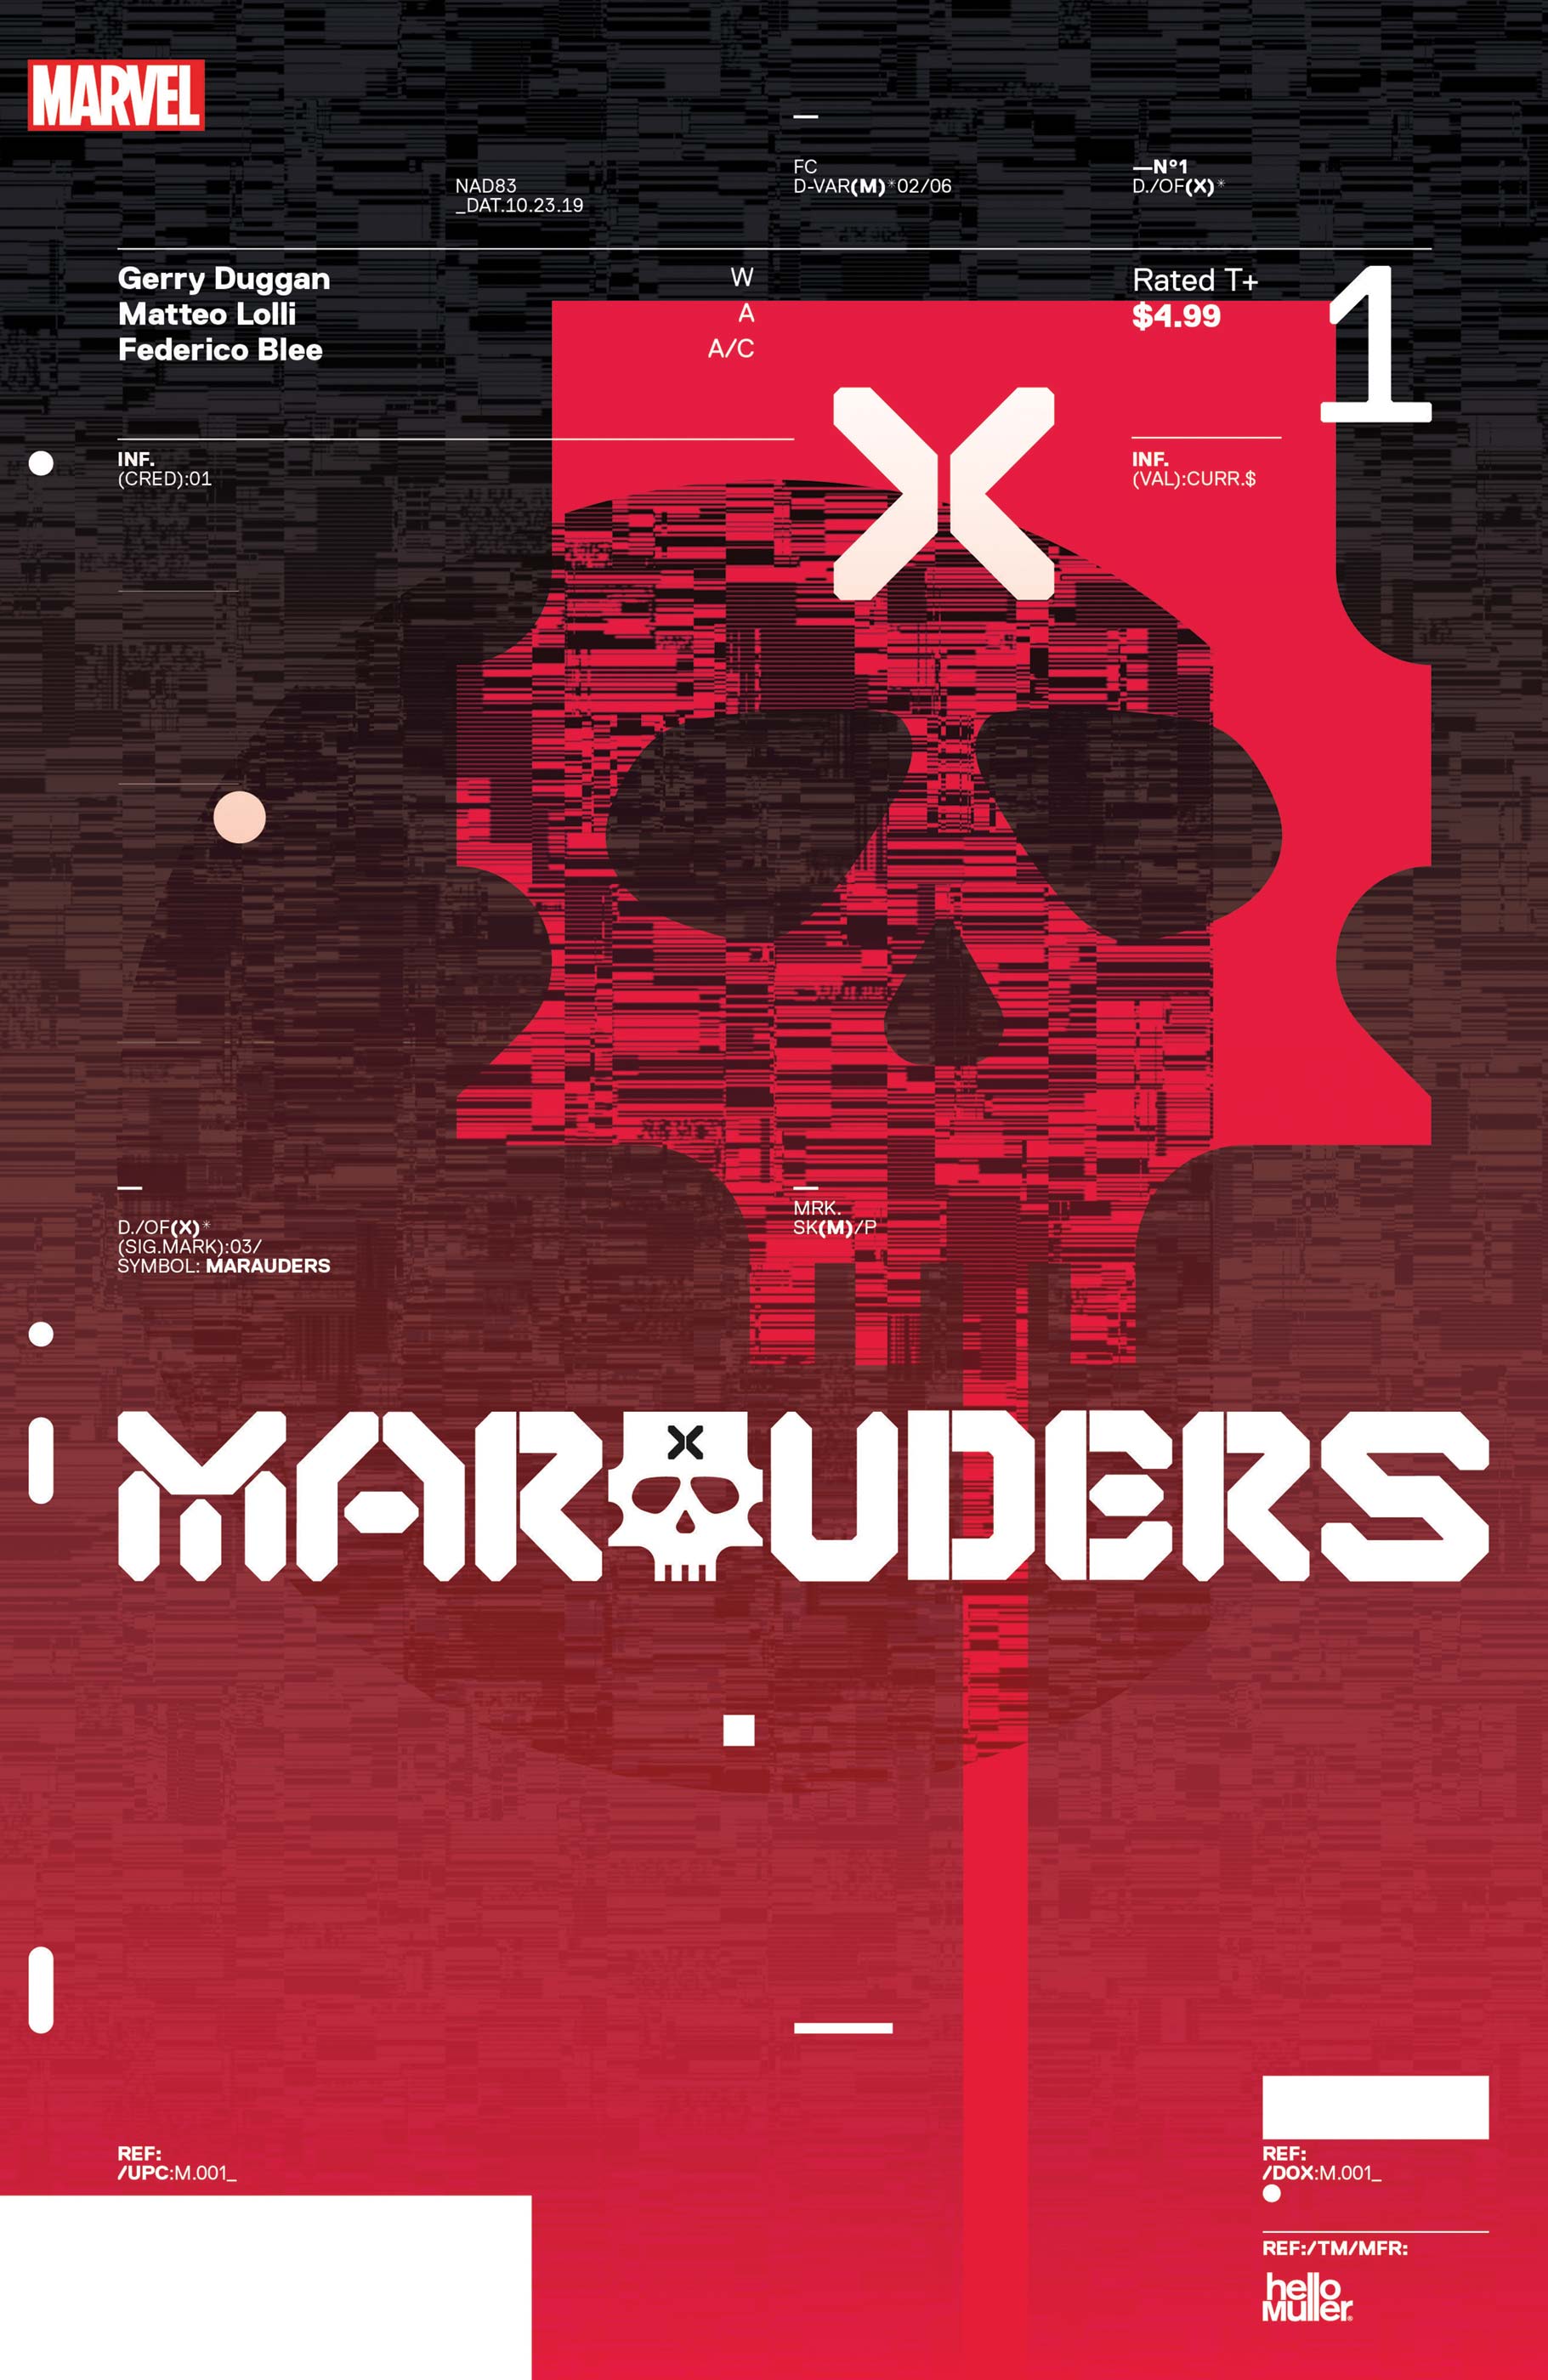 Marauders (2019) #1 (Variant)